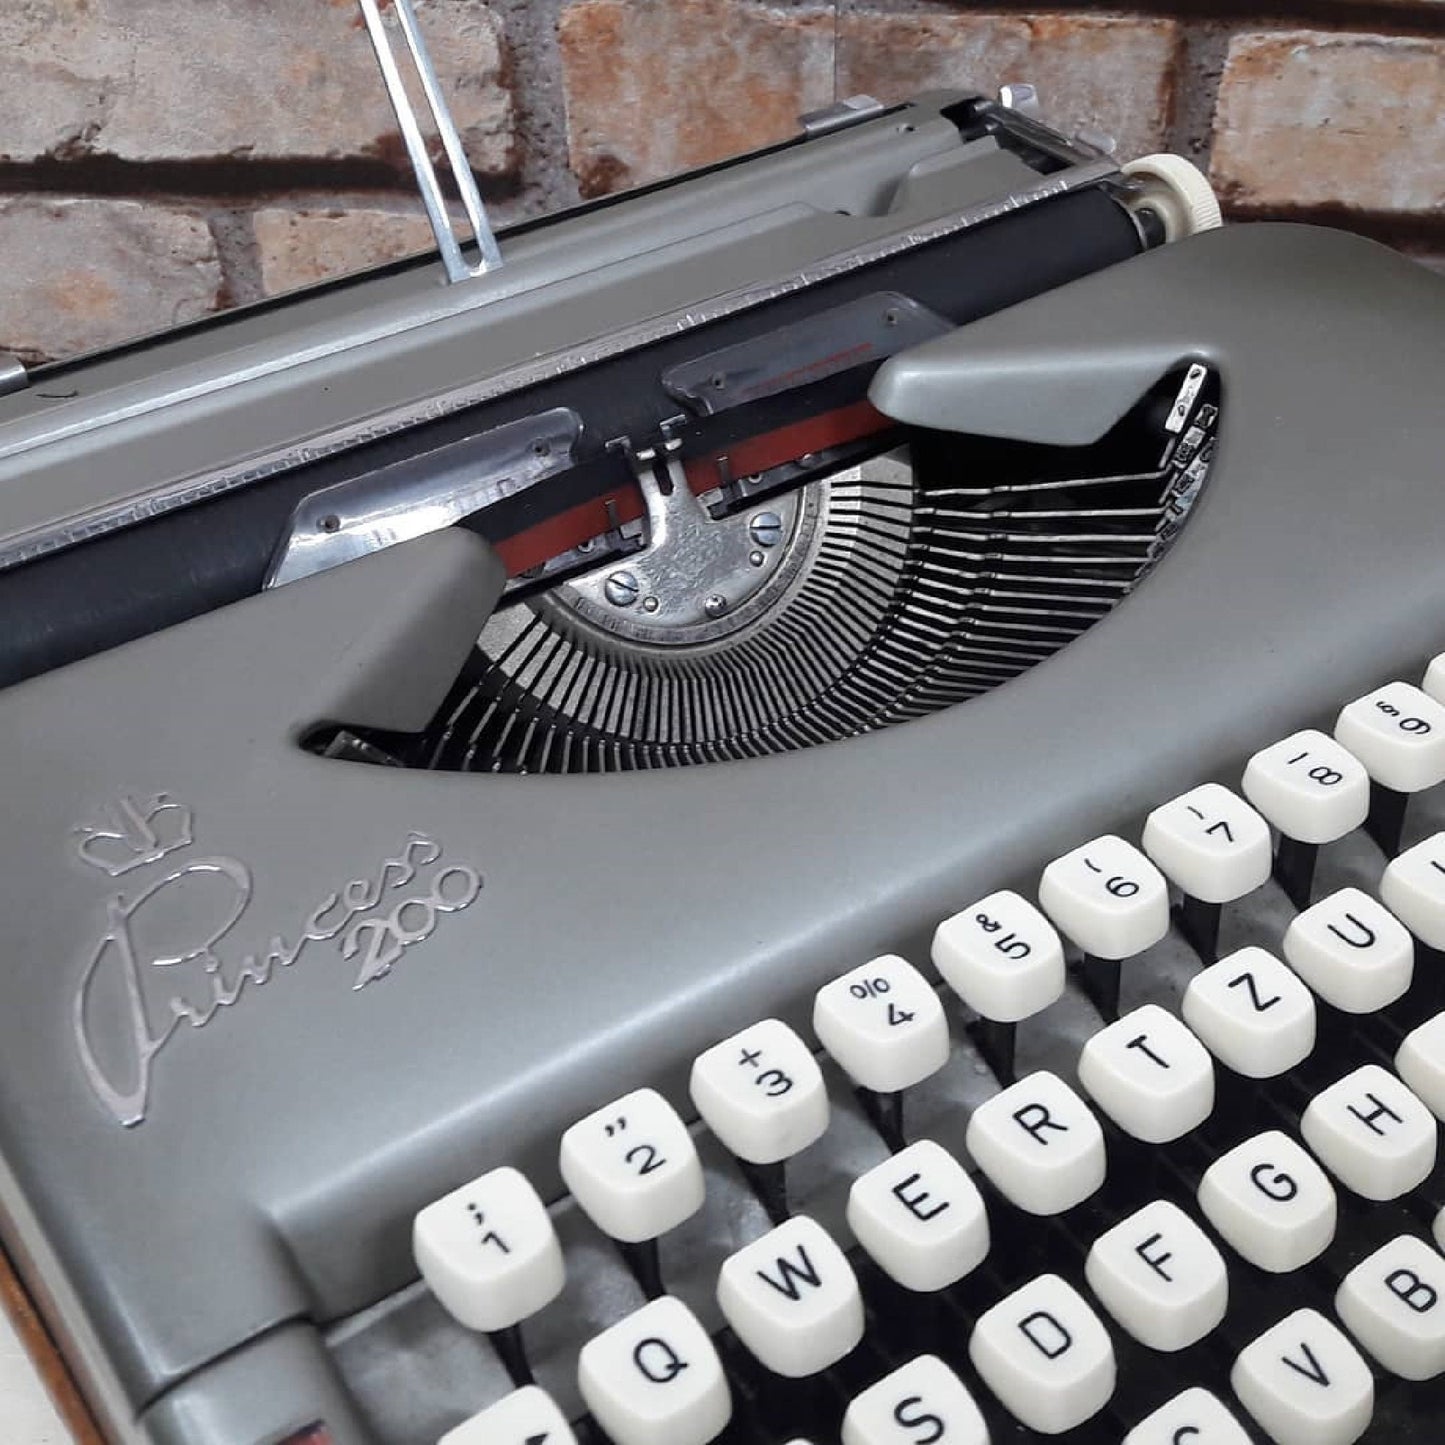 Princess 200 Typewriter, antique typewriter,old typewriter,typewriter working